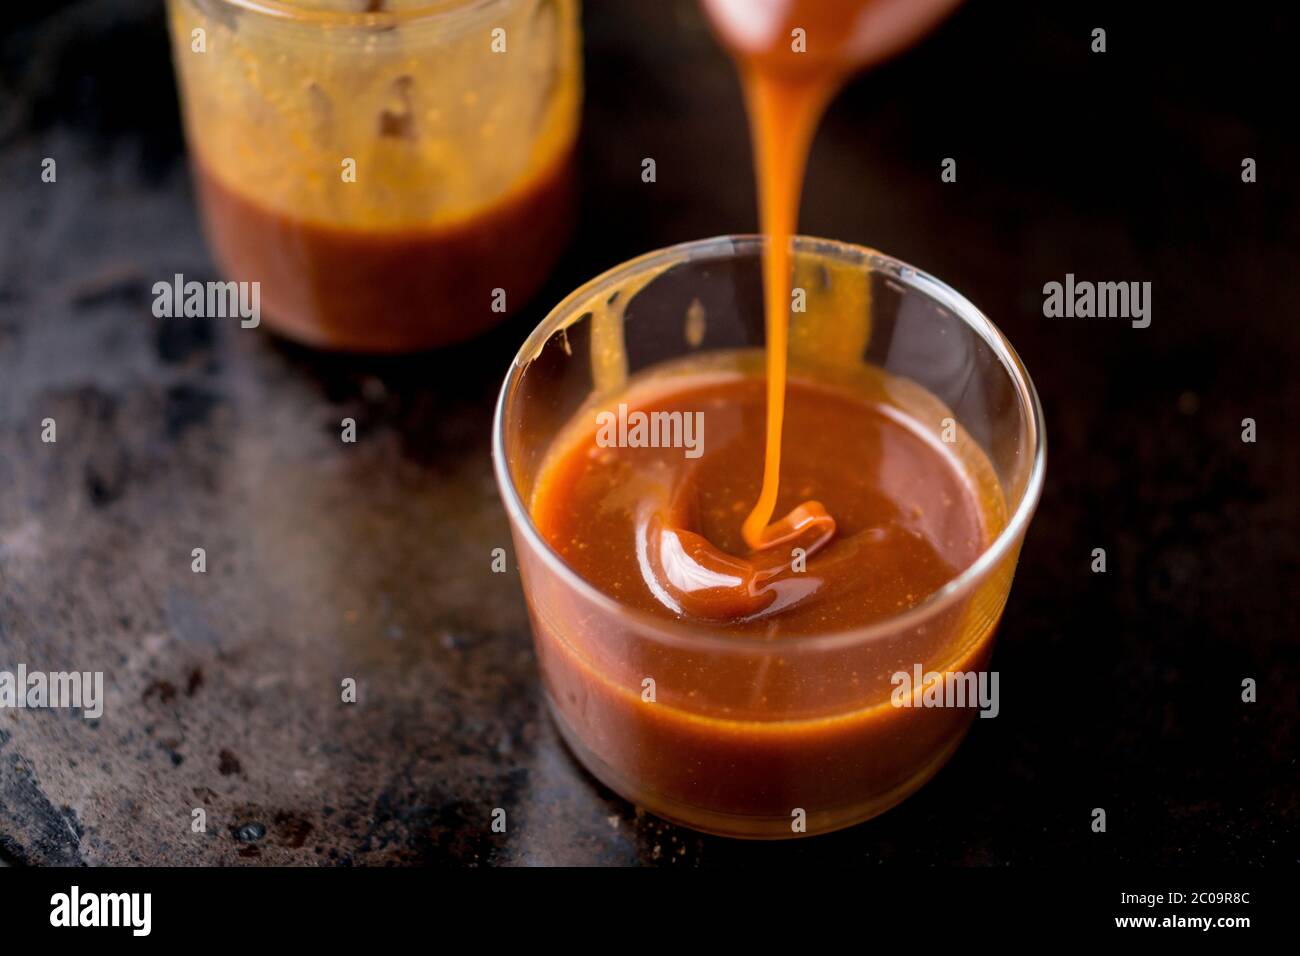 Esta dulce y deliciosa salsa de caramelo se puede utilizar como ingrediente para añadir sabor a las tartas, helados y muchos otros postres. Foto de stock